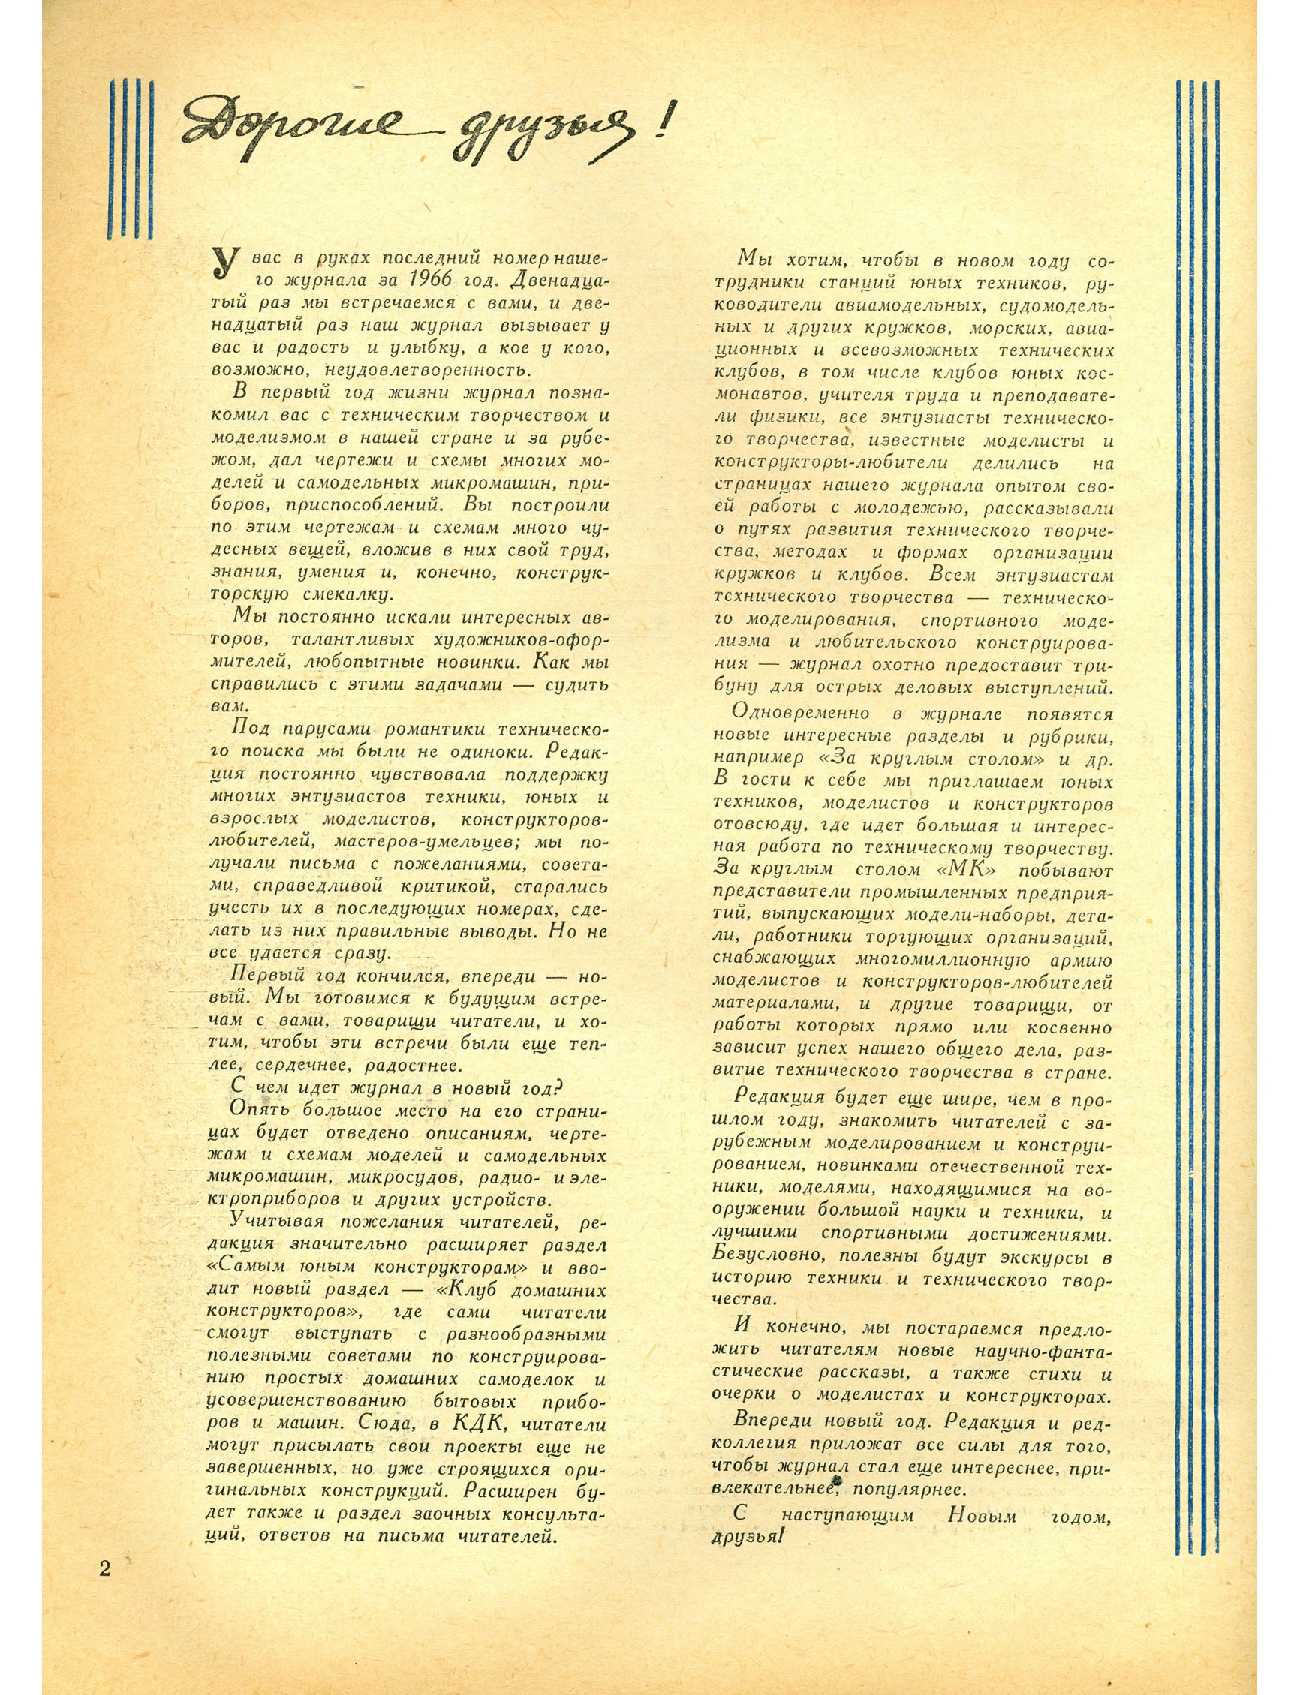 МК 12, 1966, 2 c.